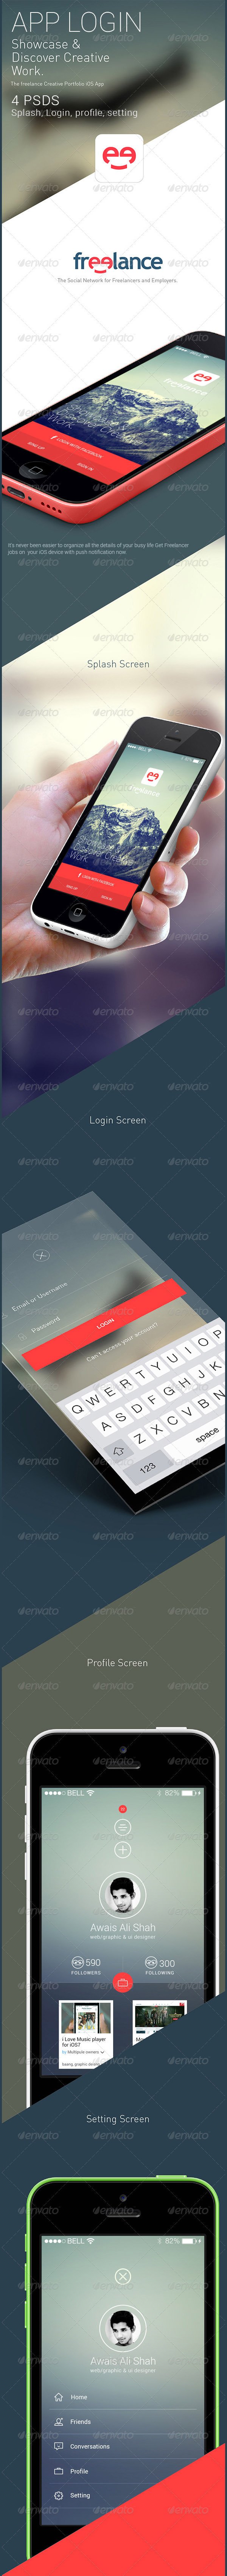 flat-ui-app-design